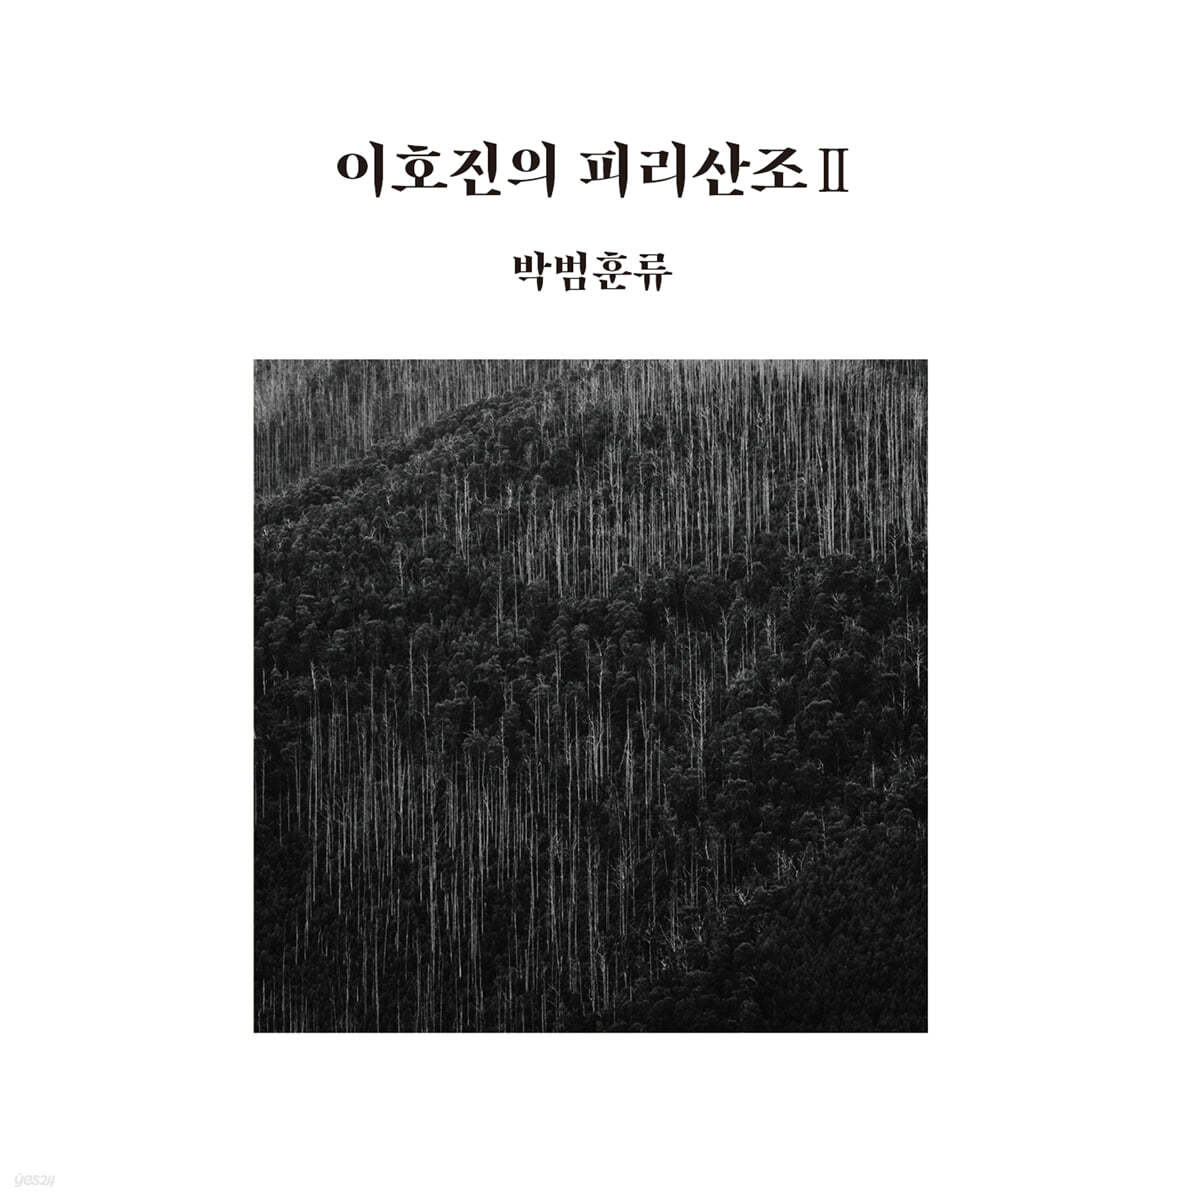 이호진 - 피리산조 Ⅱ: 박범훈류